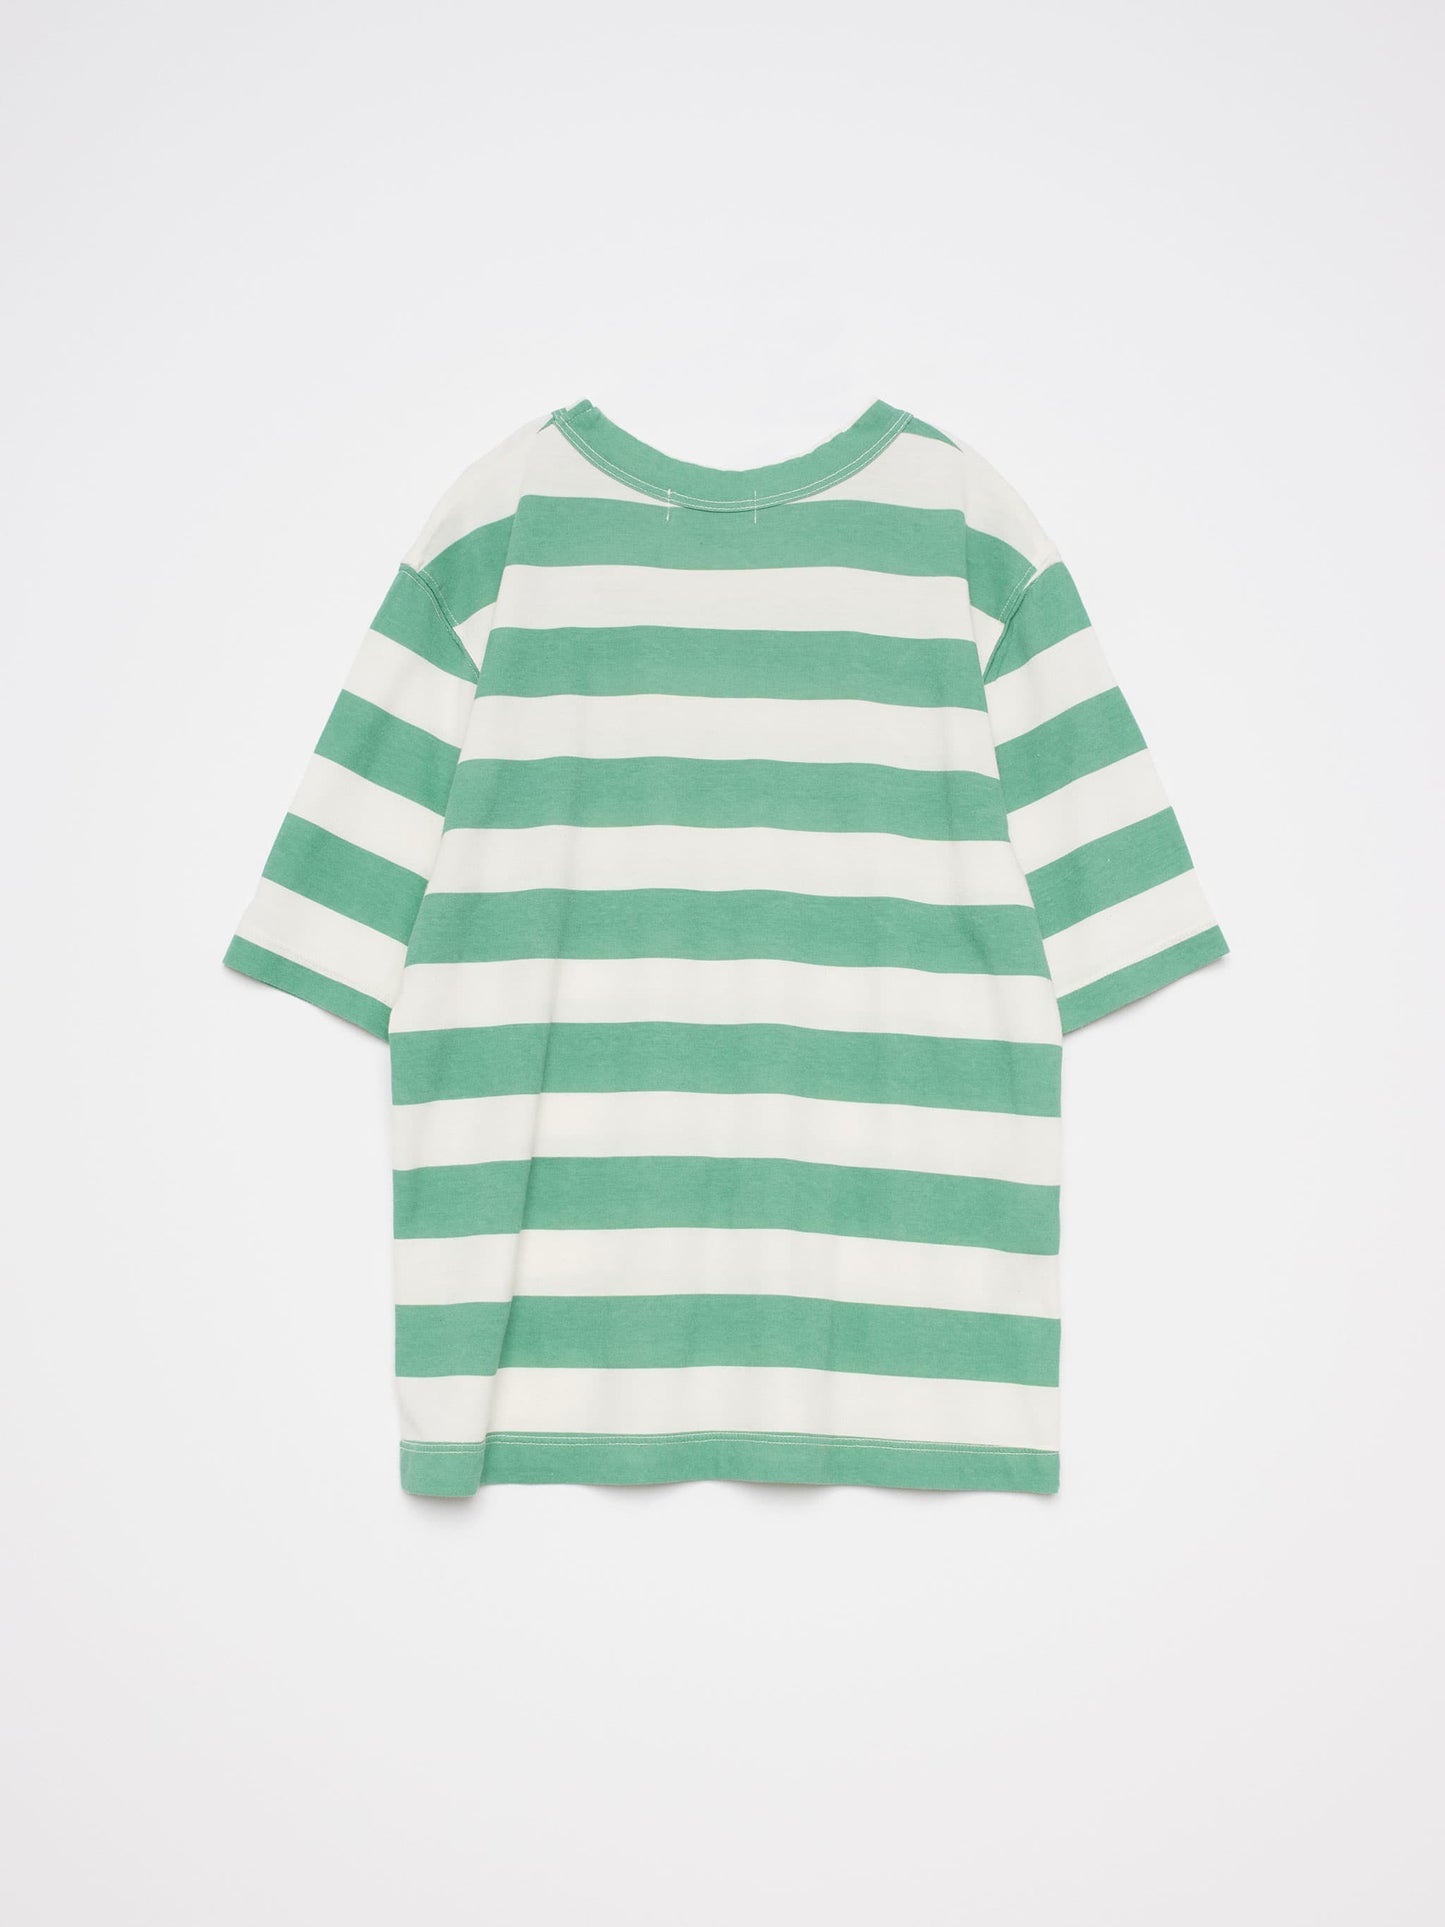 T-shirt nº05 Soft Green